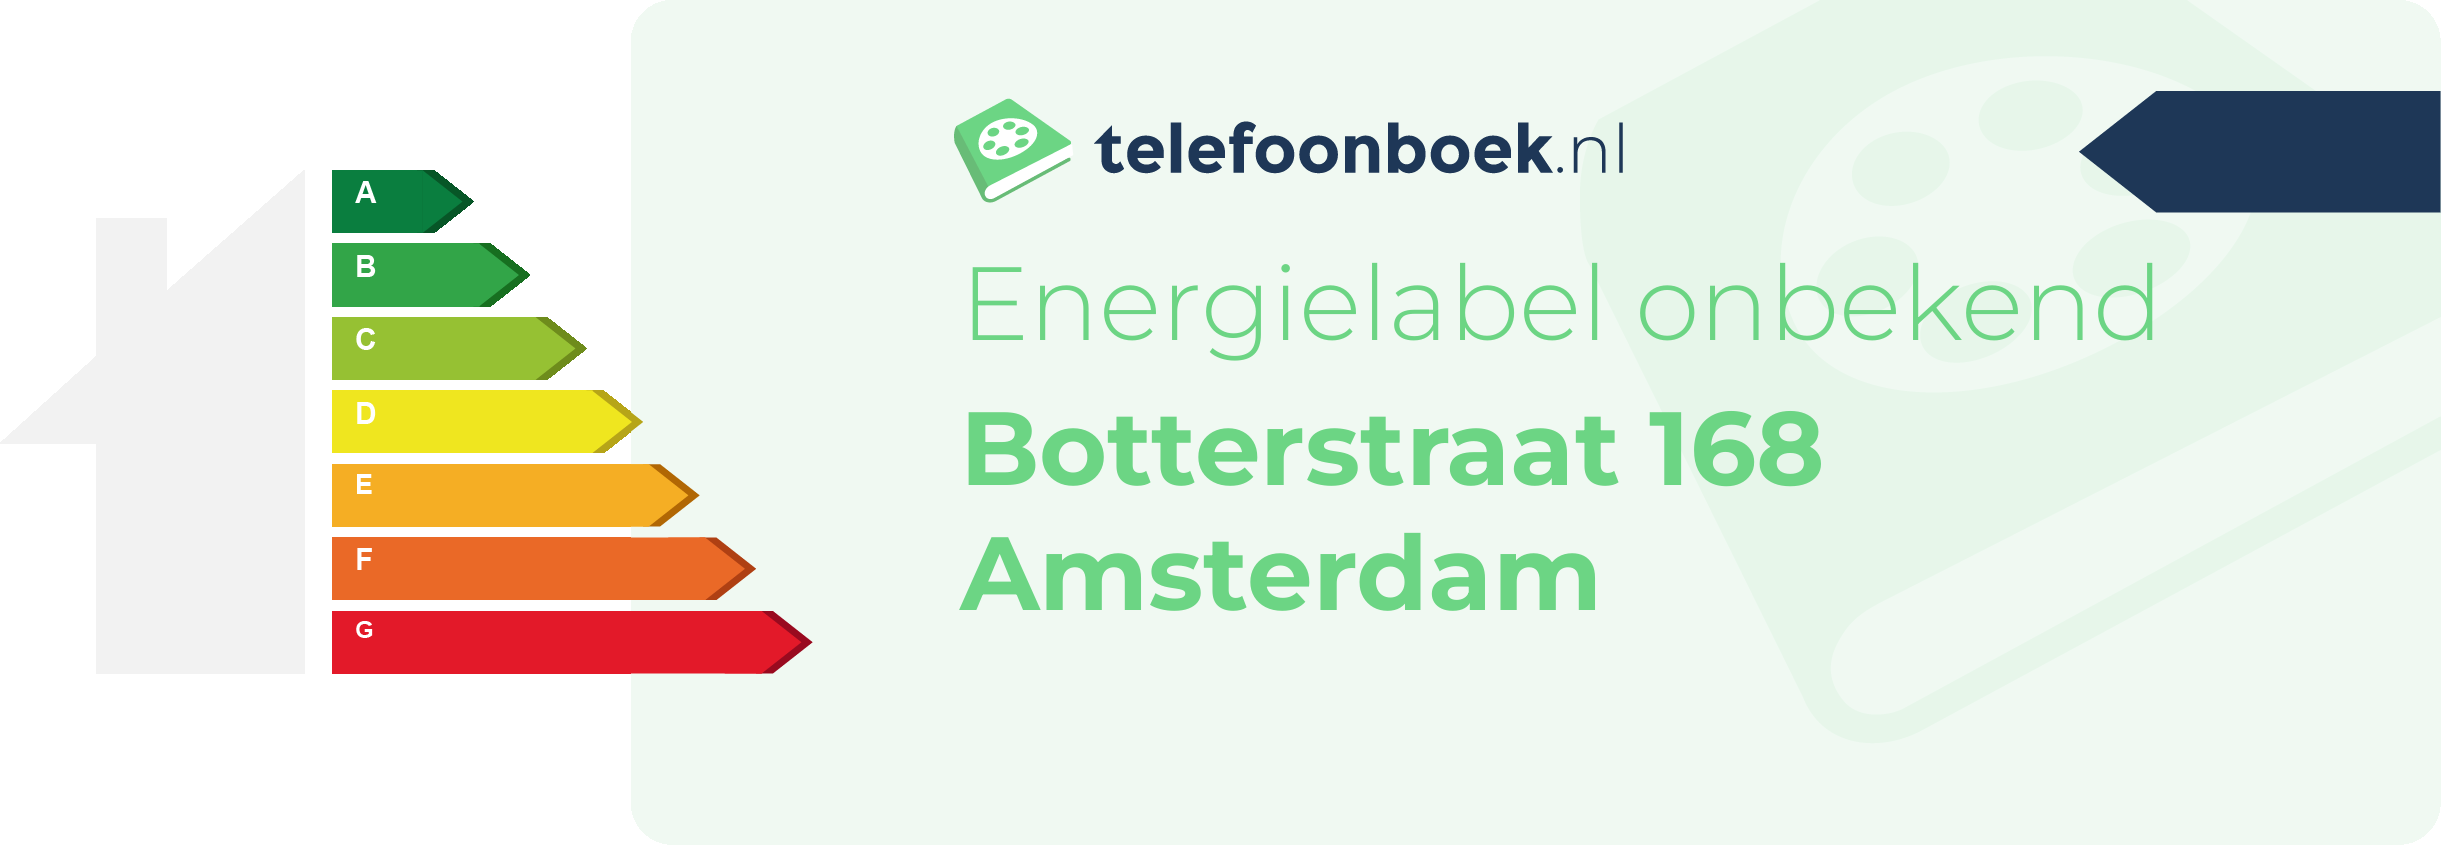 Energielabel Botterstraat 168 Amsterdam